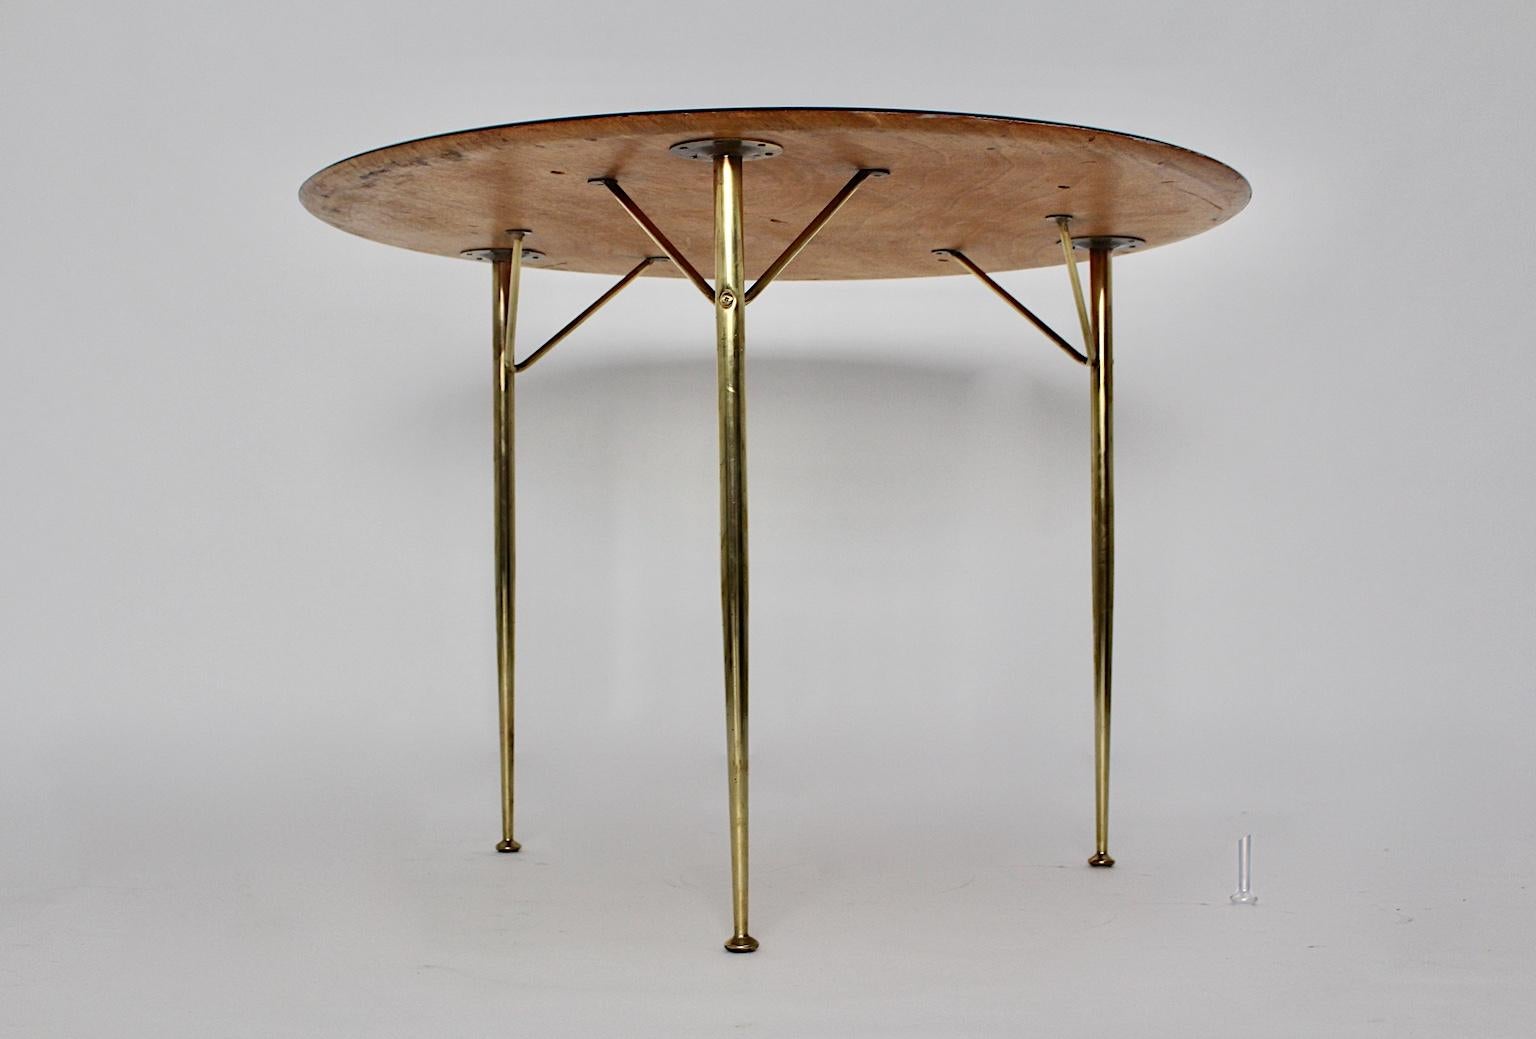 Skandinavischer moderner Vintage-Esstisch oder Mitteltisch von Arne Jacobsen für Fritz Hansen, der in den 1950er Jahren in Dänemark entworfen und hergestellt wurde.
Der Esstisch hat einen Messingfuß mit drei Beinen und eine neu schwarz lackierte